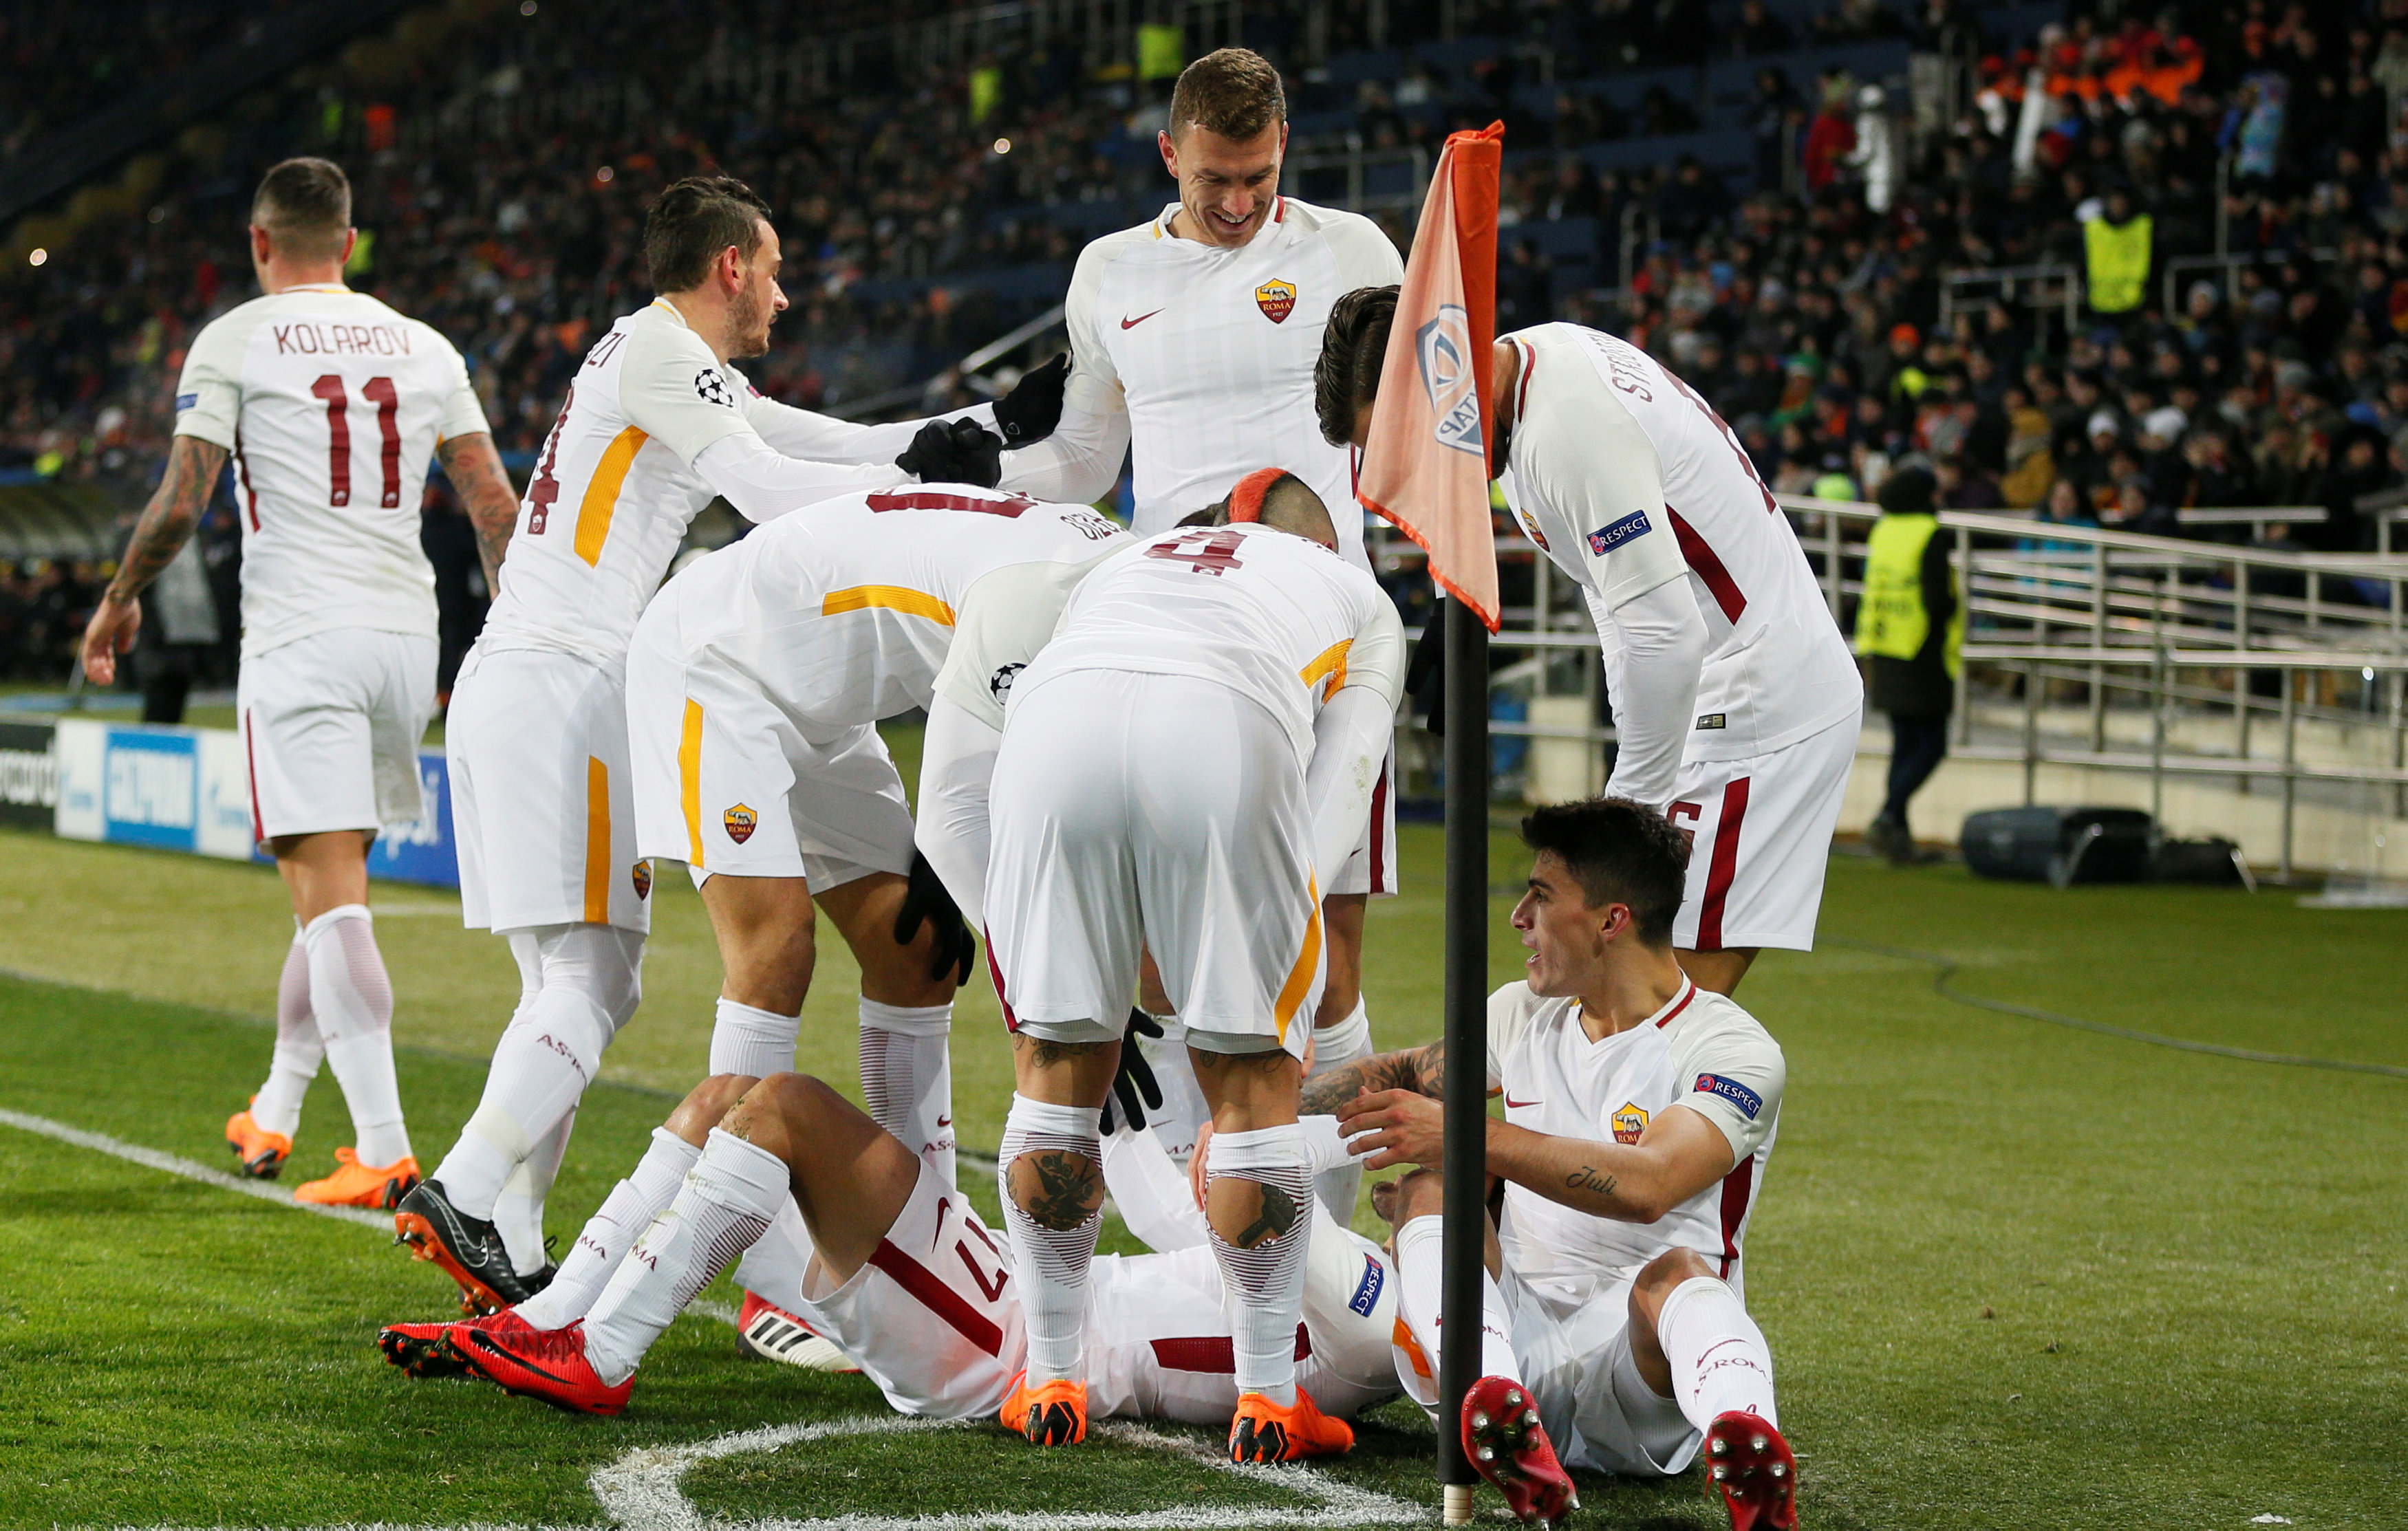 Niềm vui của các cầu thủ Roma sau khi có bàn mở tỉ số. Ảnh: REUTERS